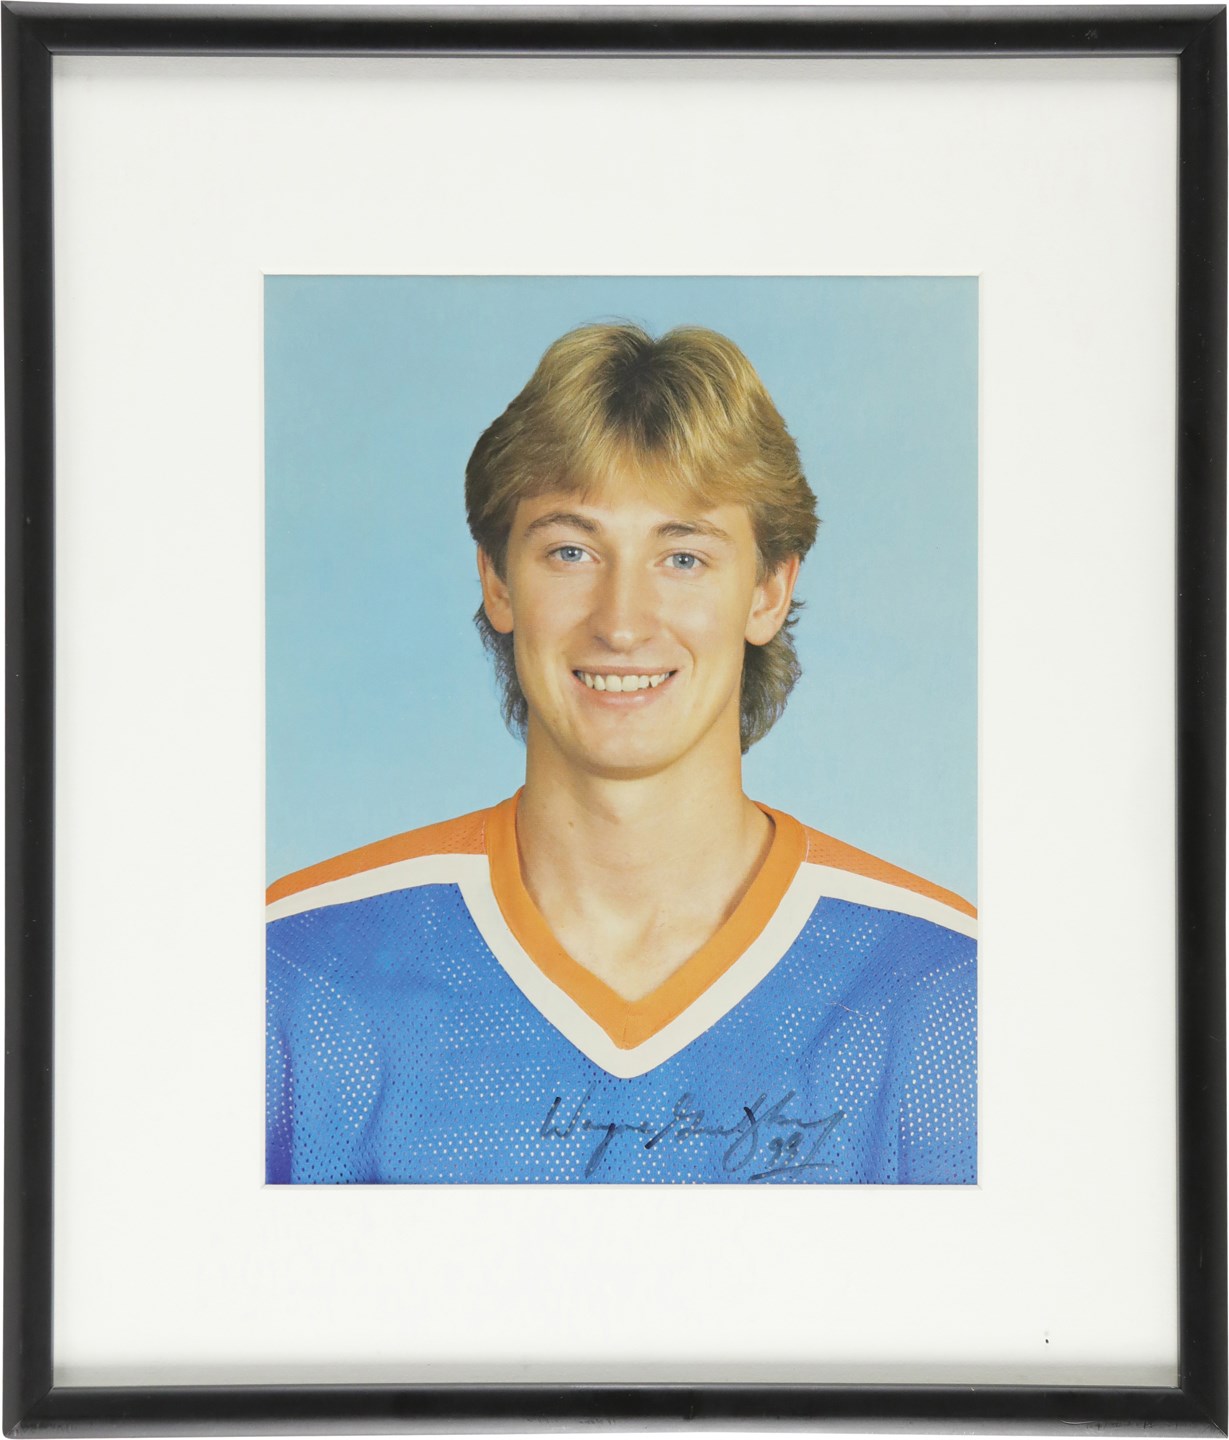 Hockey - Wayne Gretzky Rookie Era Signed Photograph (PSA)